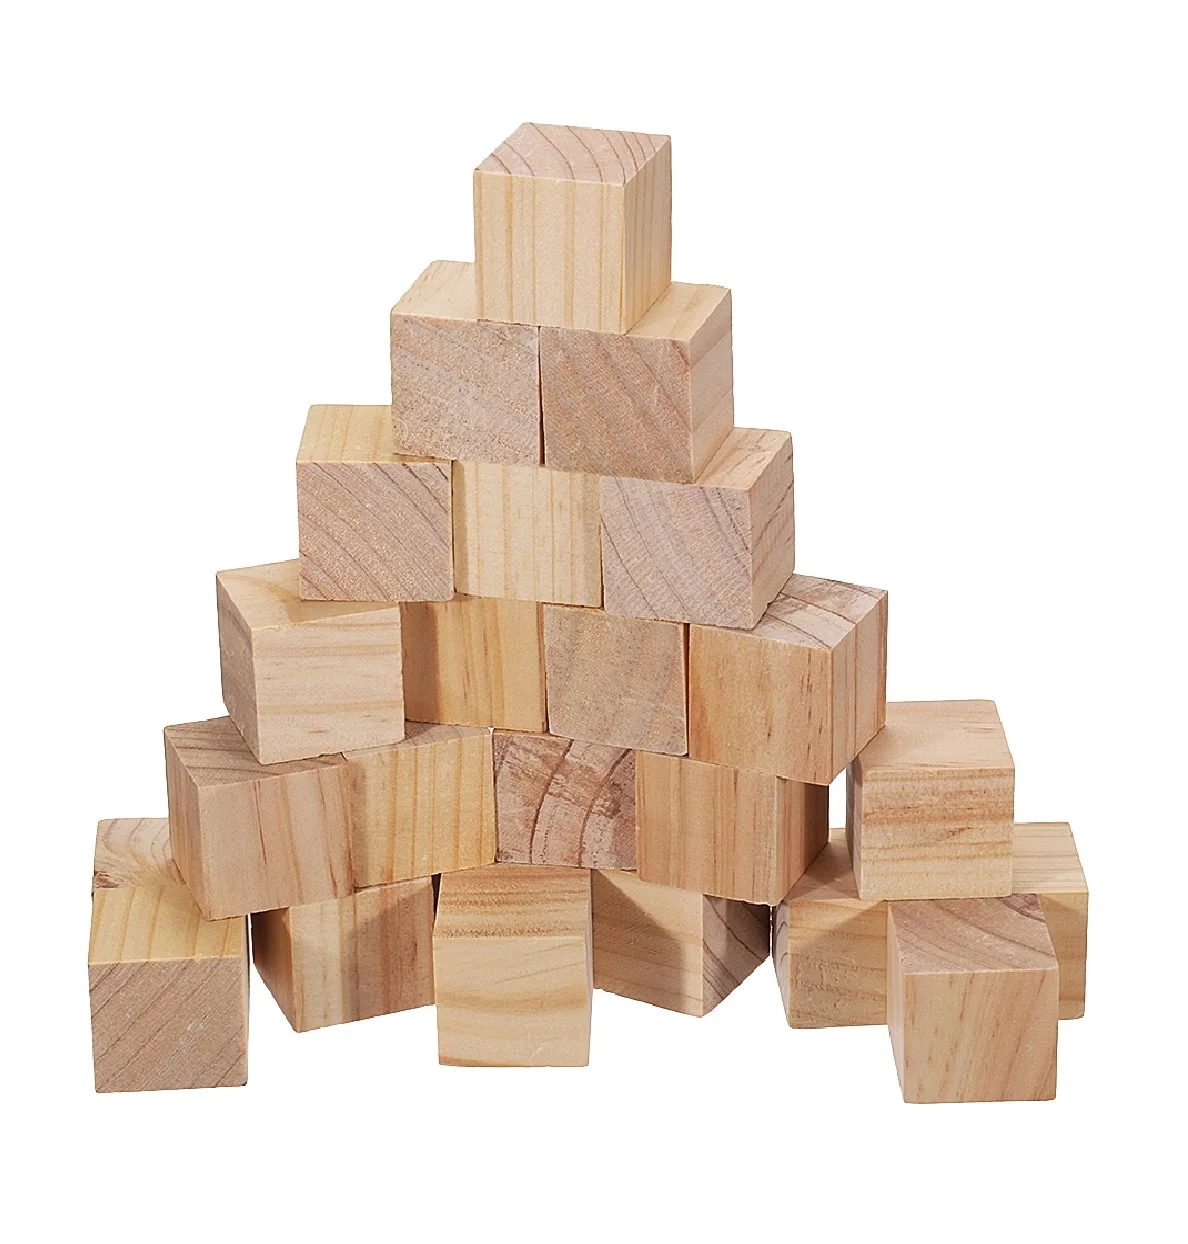 200 pezzi di legno naturale cubi quadrati blocchi giocattolo per bambini 